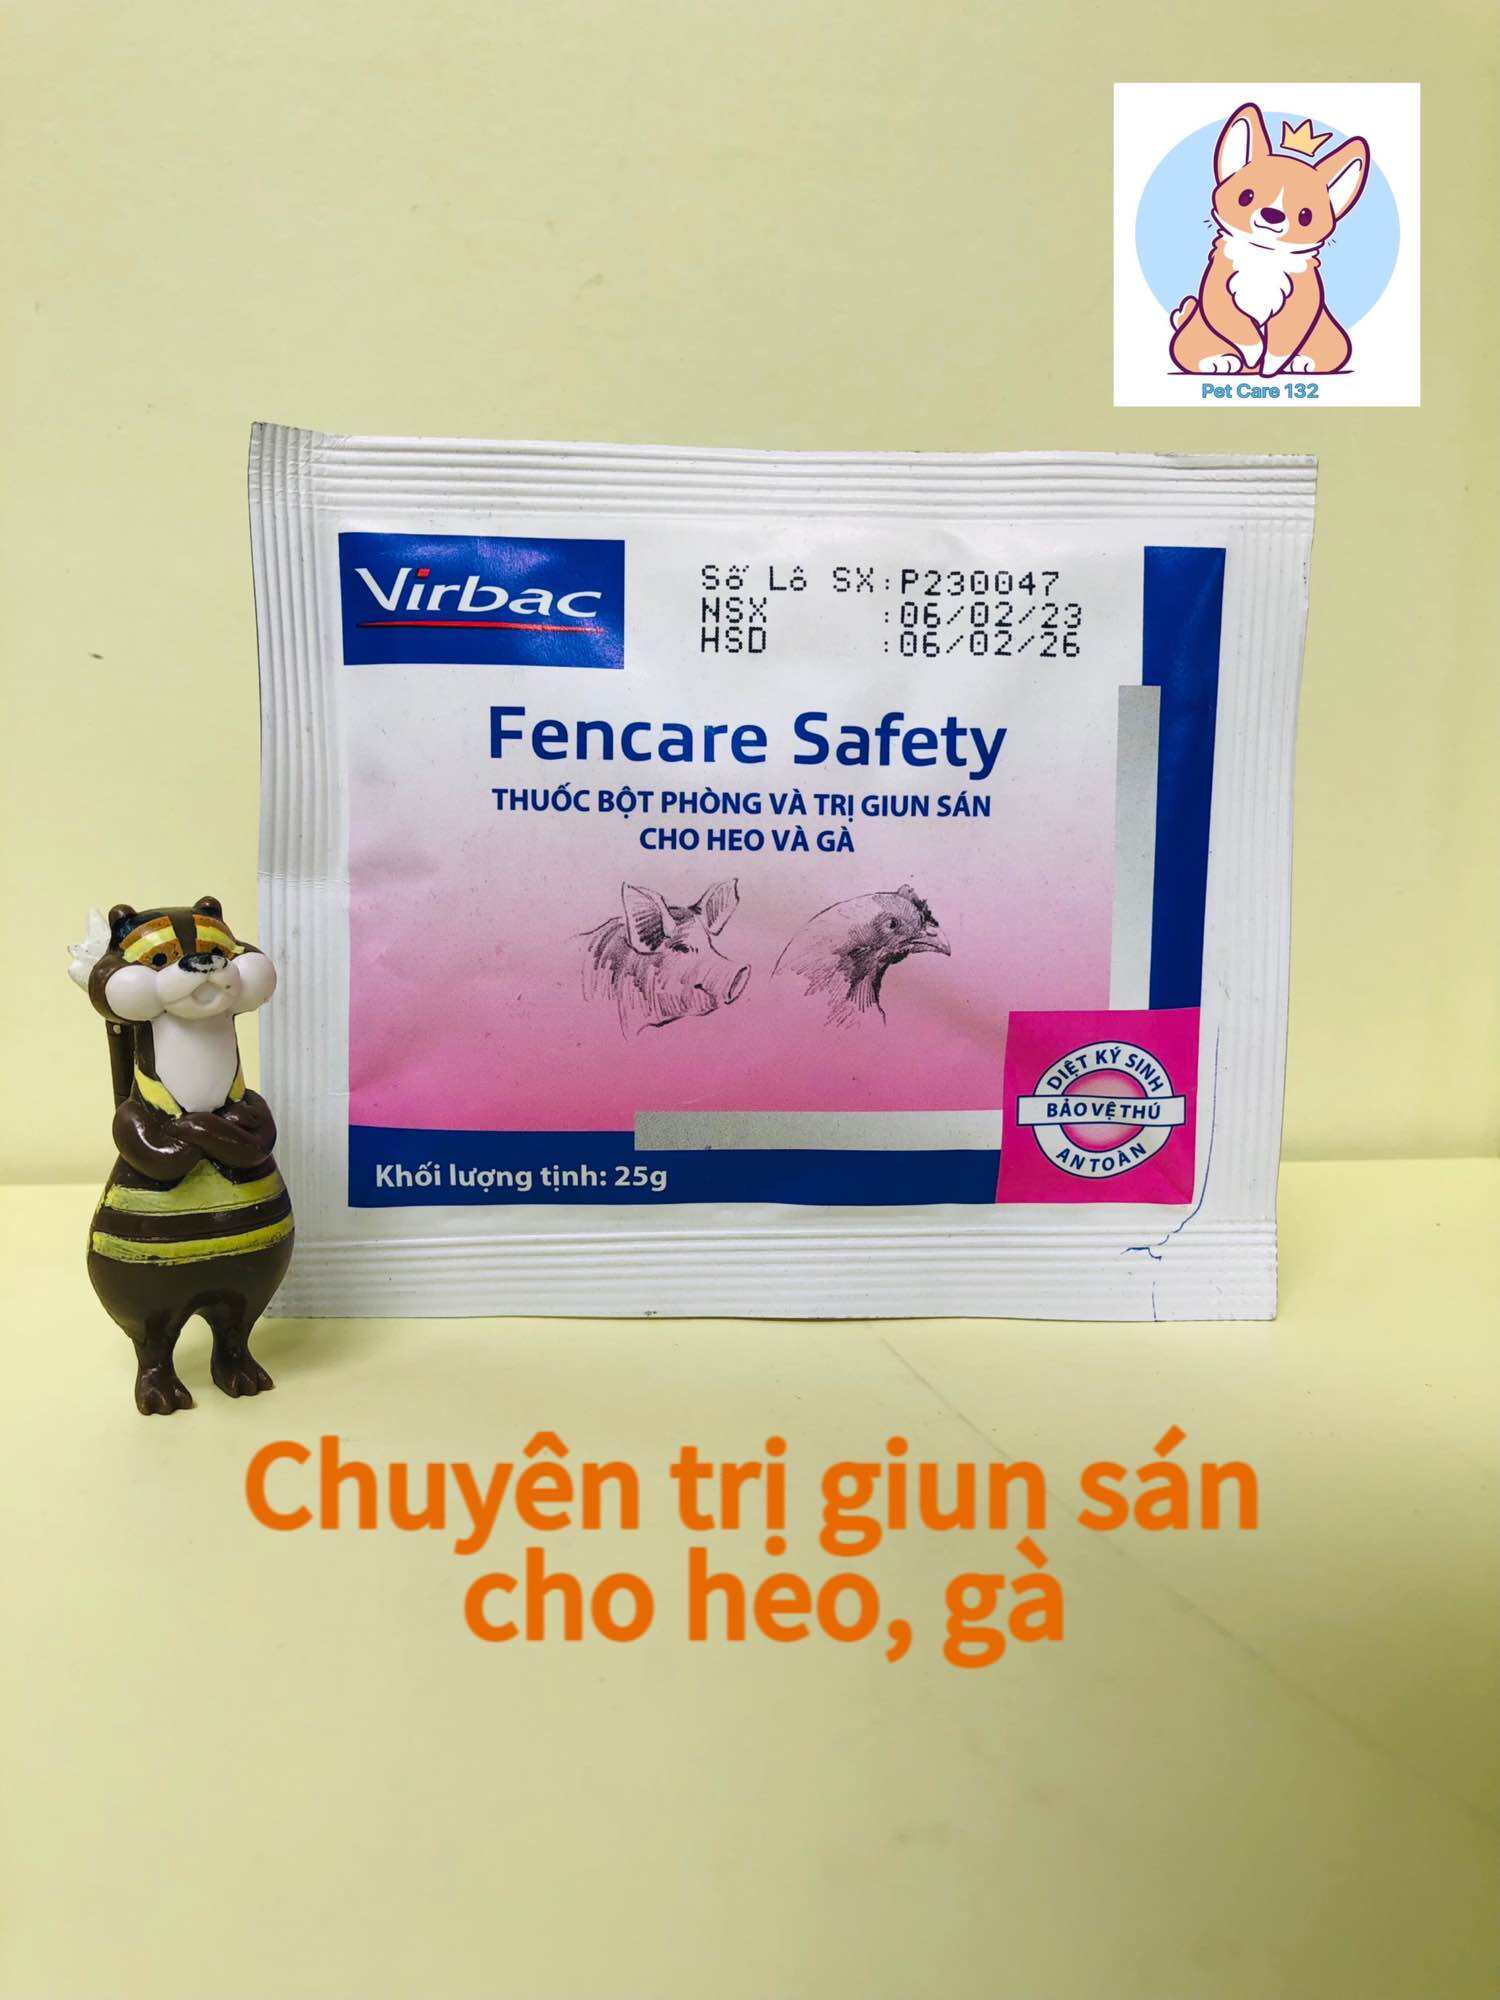 Fencare Safety 25gram virbac, Sổ giun sán trên heo và gà.